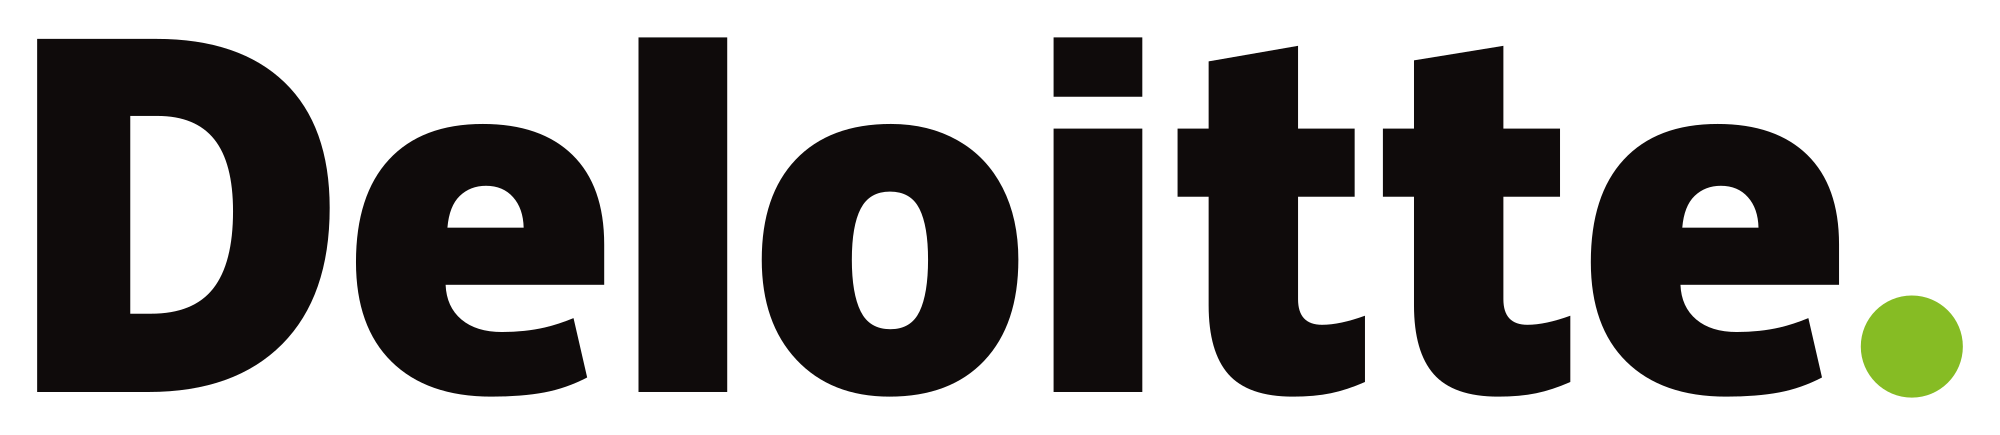 logo of Deloitte